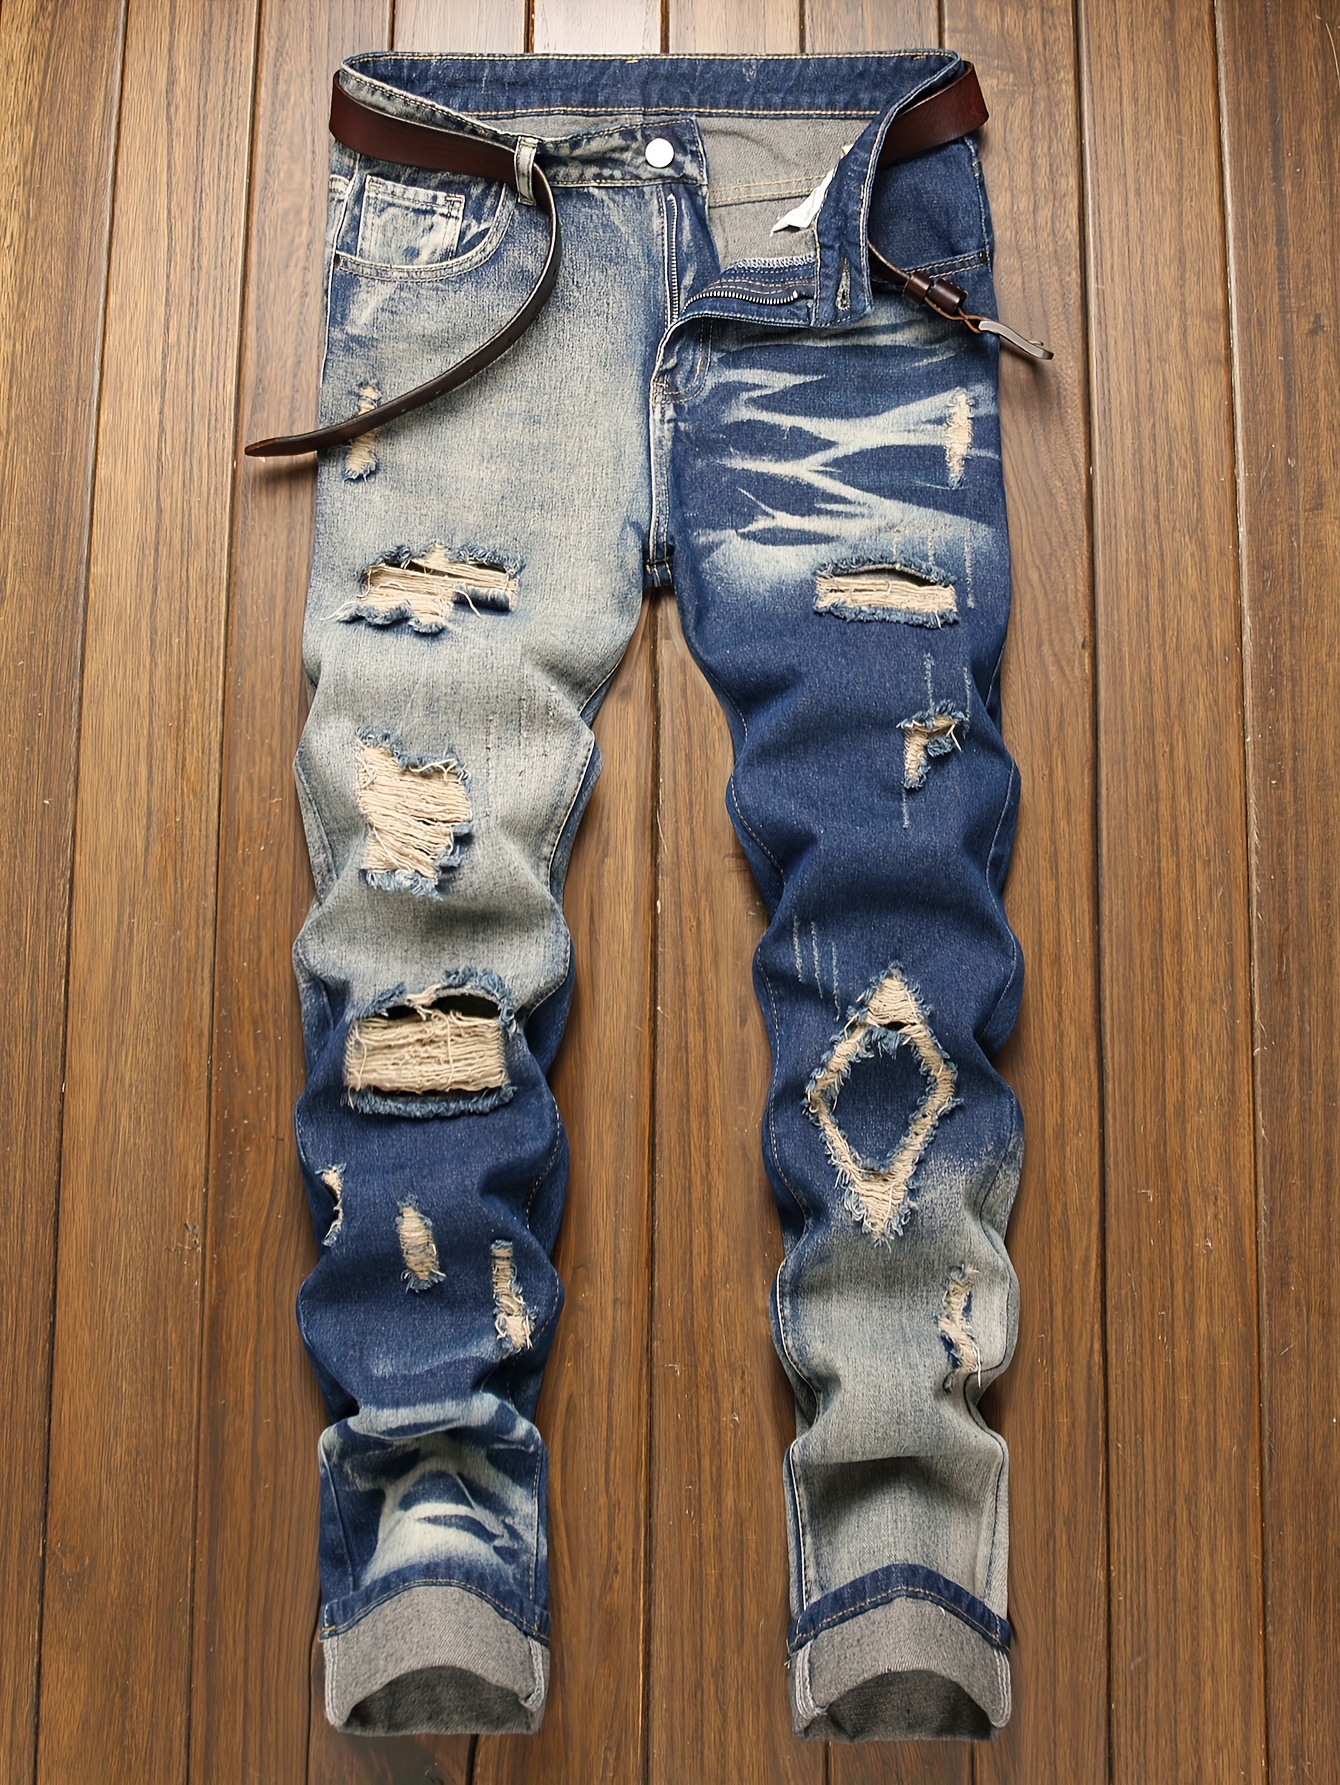 Jeans de cintura alta com buracos rasgados, boca de sino, pernas largas,  acabamento cru, calças jeans desgastadas, jeans e roupas femininas